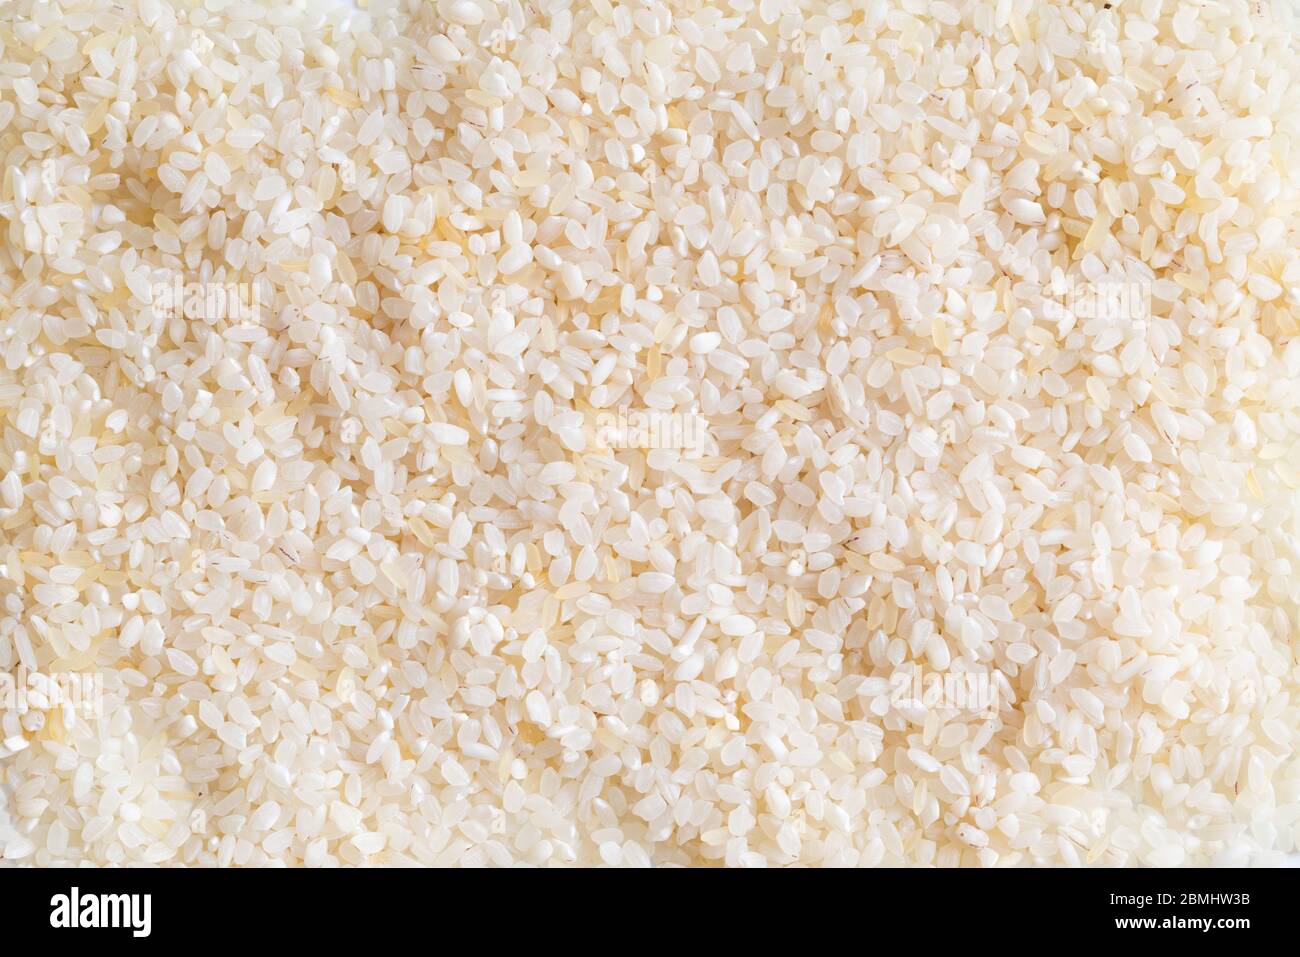 Fond de riz mélangé. Texture de deux types différents de riz brut. Riz risotto. Alimentation saine. Non cuit, naturel. Gros plan sur les grains blancs. Vue de dessus Banque D'Images